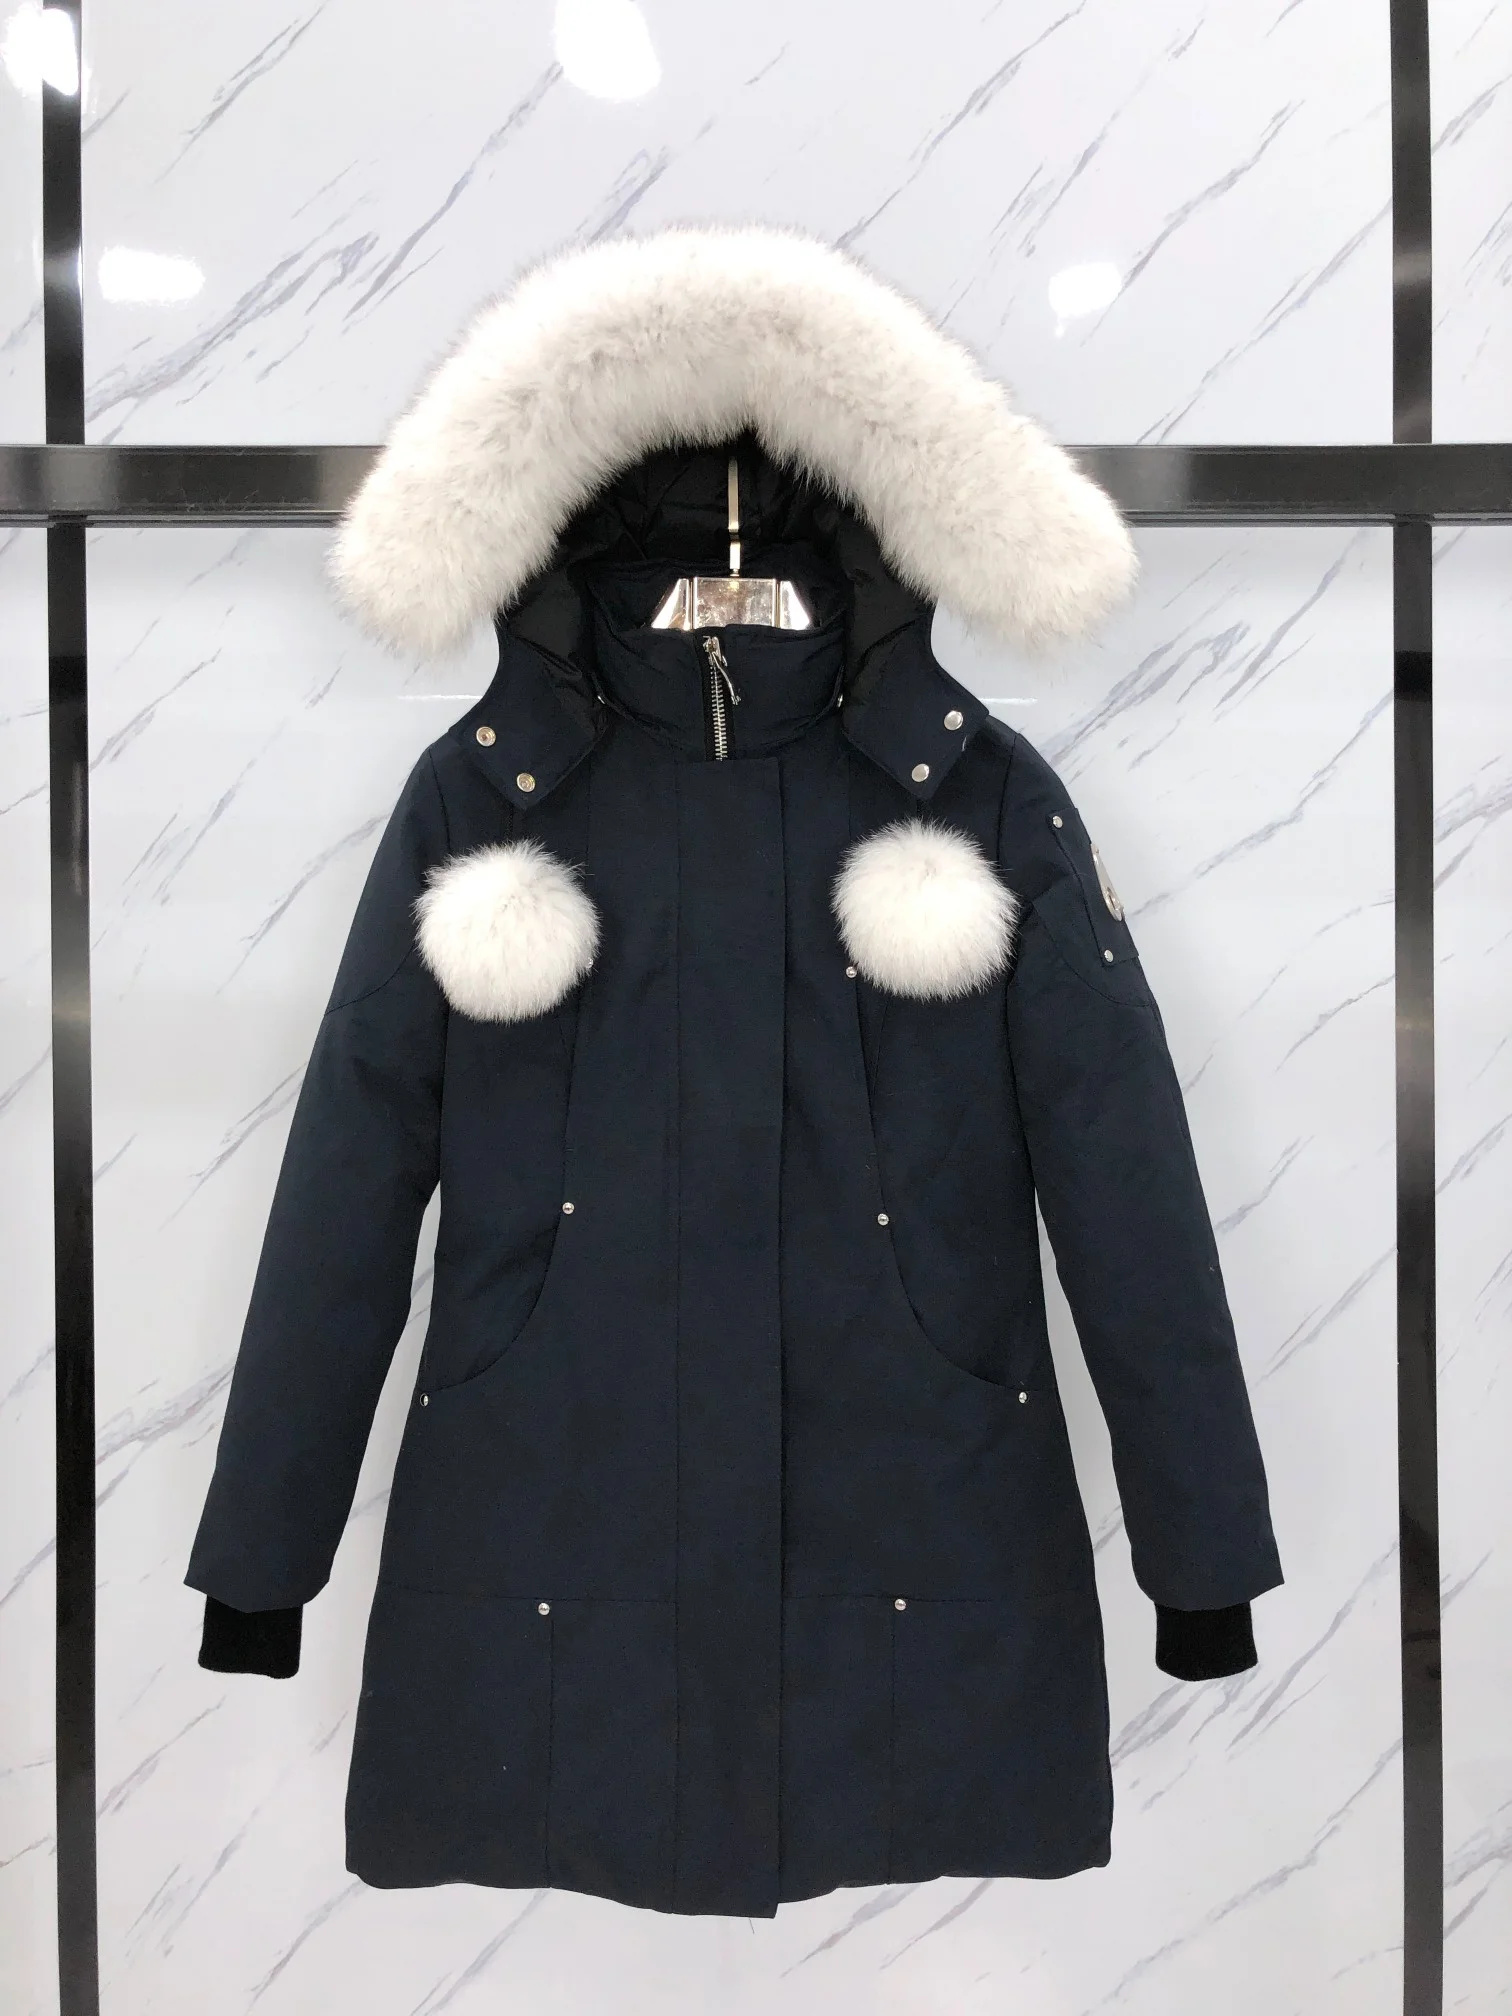 Зимняя мужская куртка Mooses с капюшоном, пальто с длинным меховым воротником, мужская одежда, женская парка до колена, теплая женская пуховая куртка на костяшках пальцев